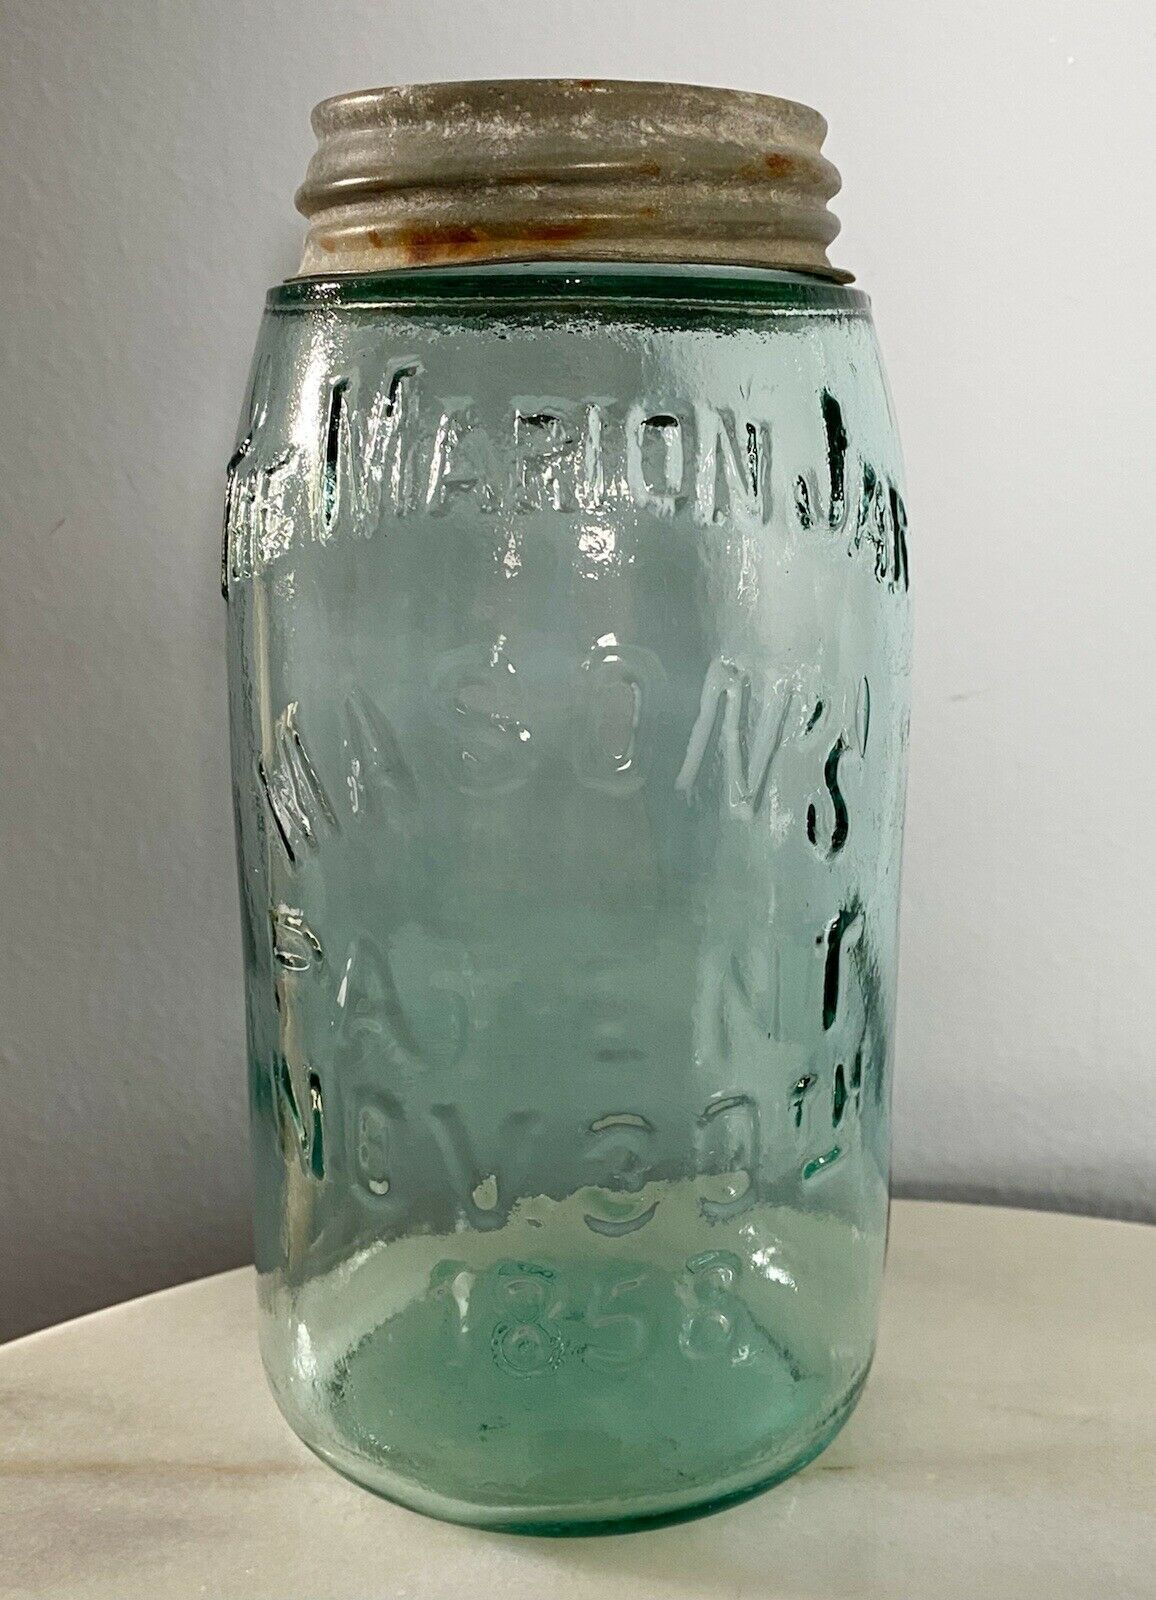 The Marion Jar Mason’s Nov 30, 1858 Quart, #17 Teal Green Bubbles Zinc Glass Lid